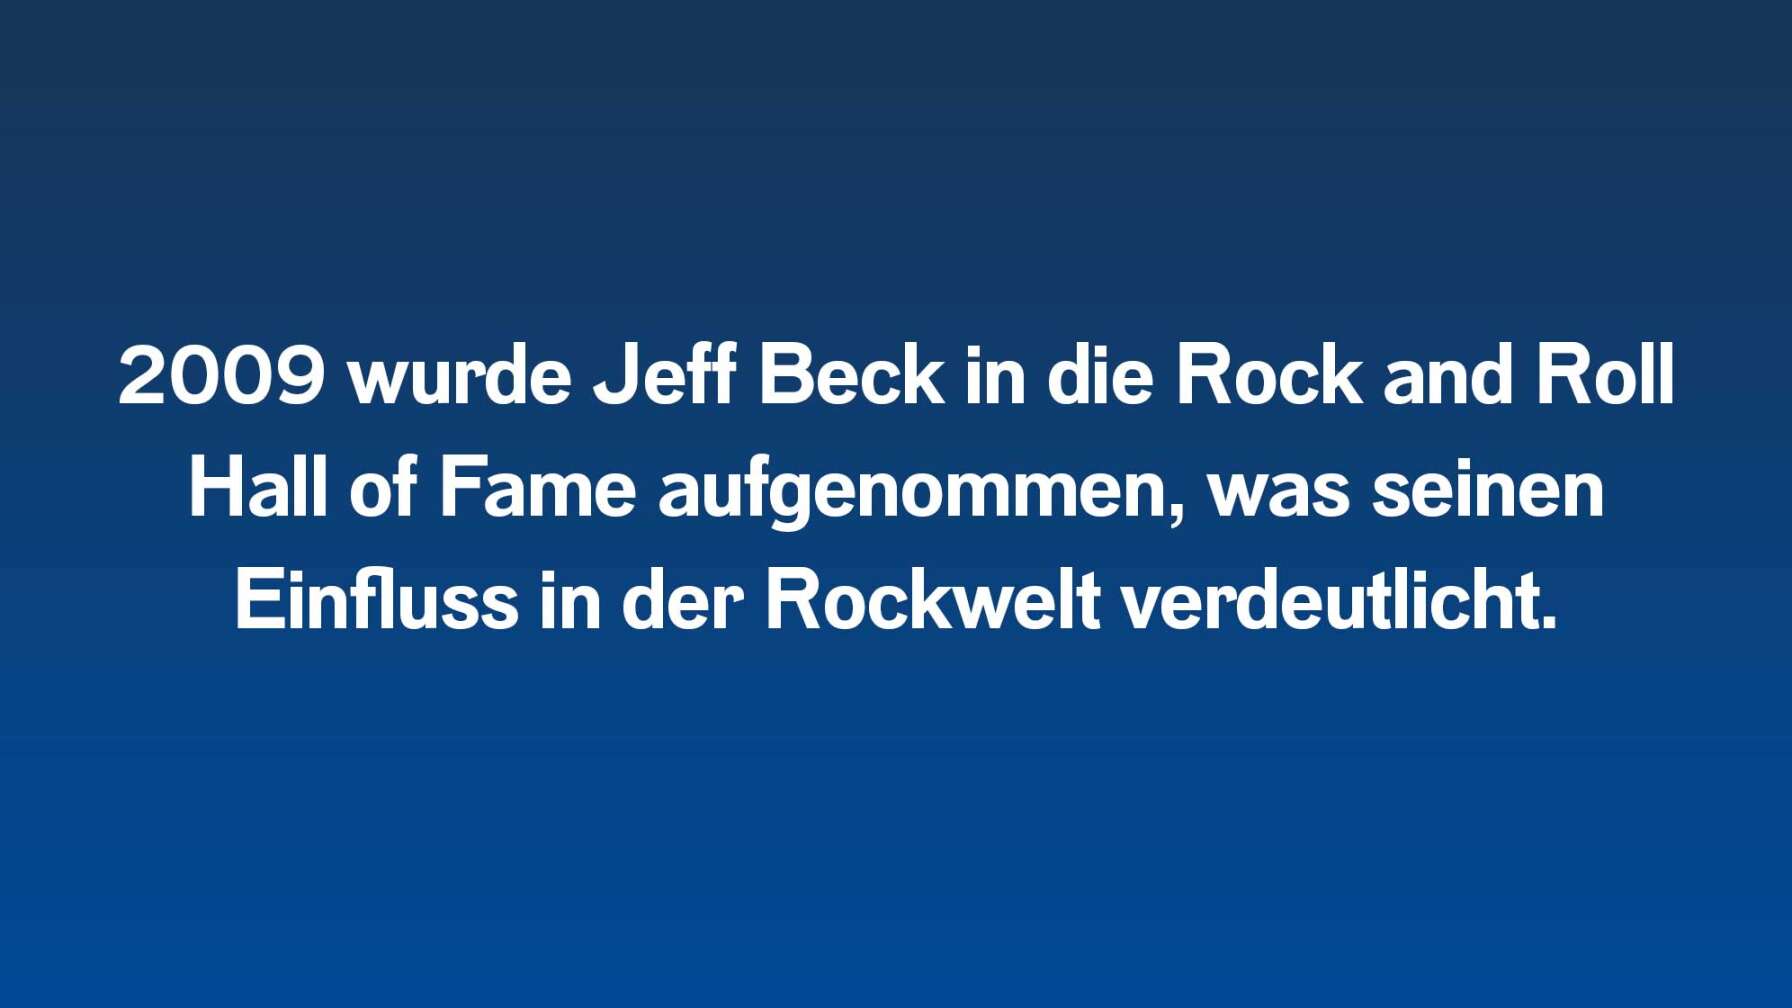 2009 wurde Jeff Beck in die Rock and Roll Hall of Fame aufgenommen, was seinen Einfluss in der Rockwelt verdeutlicht.